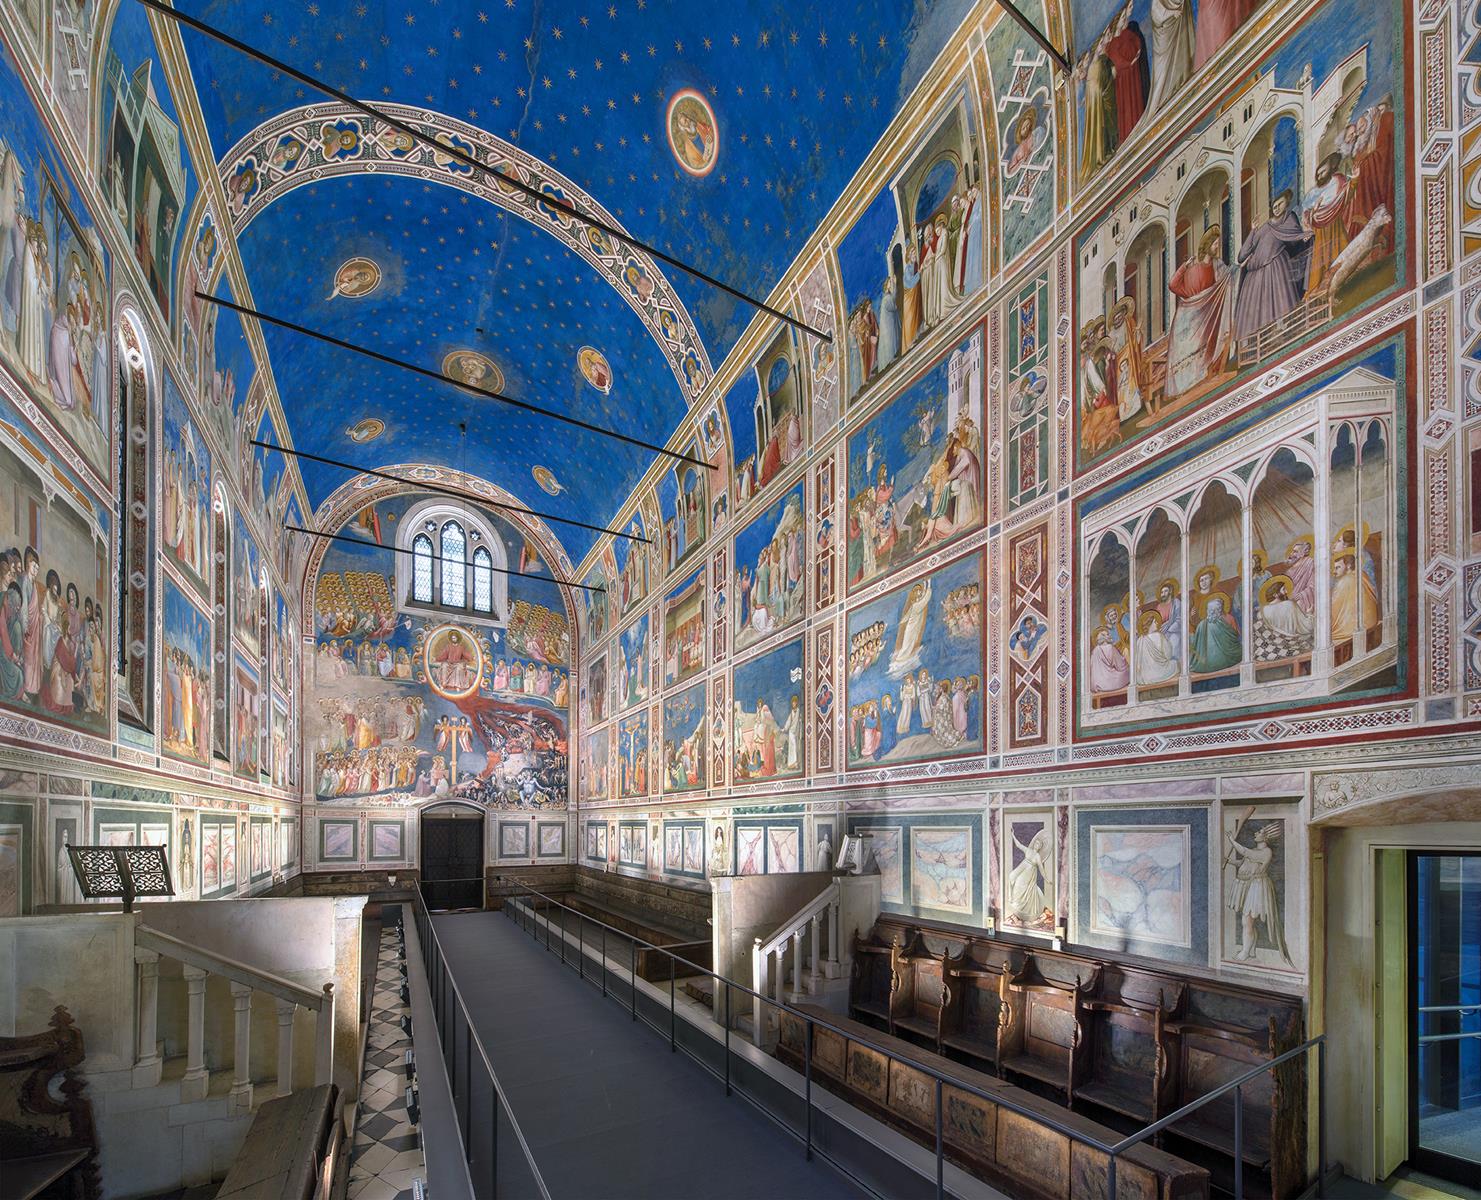 Фрески XIV века в итальянской Падуе получили статус объекта Всемирного наследия ЮНЕСКО